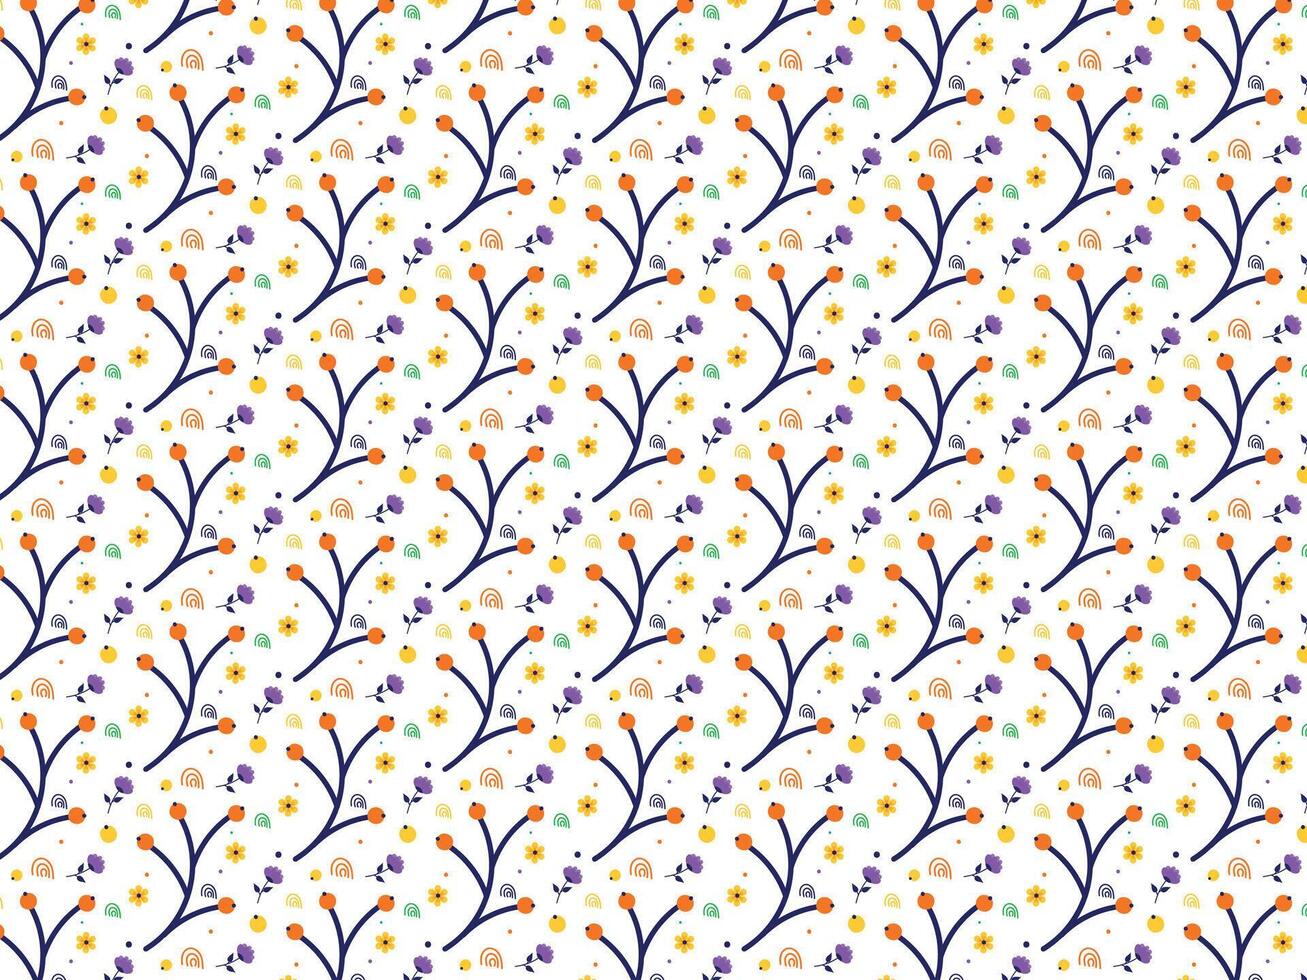 kleurrijk bloemen kinderspel achtergrond patroon illustratie vector